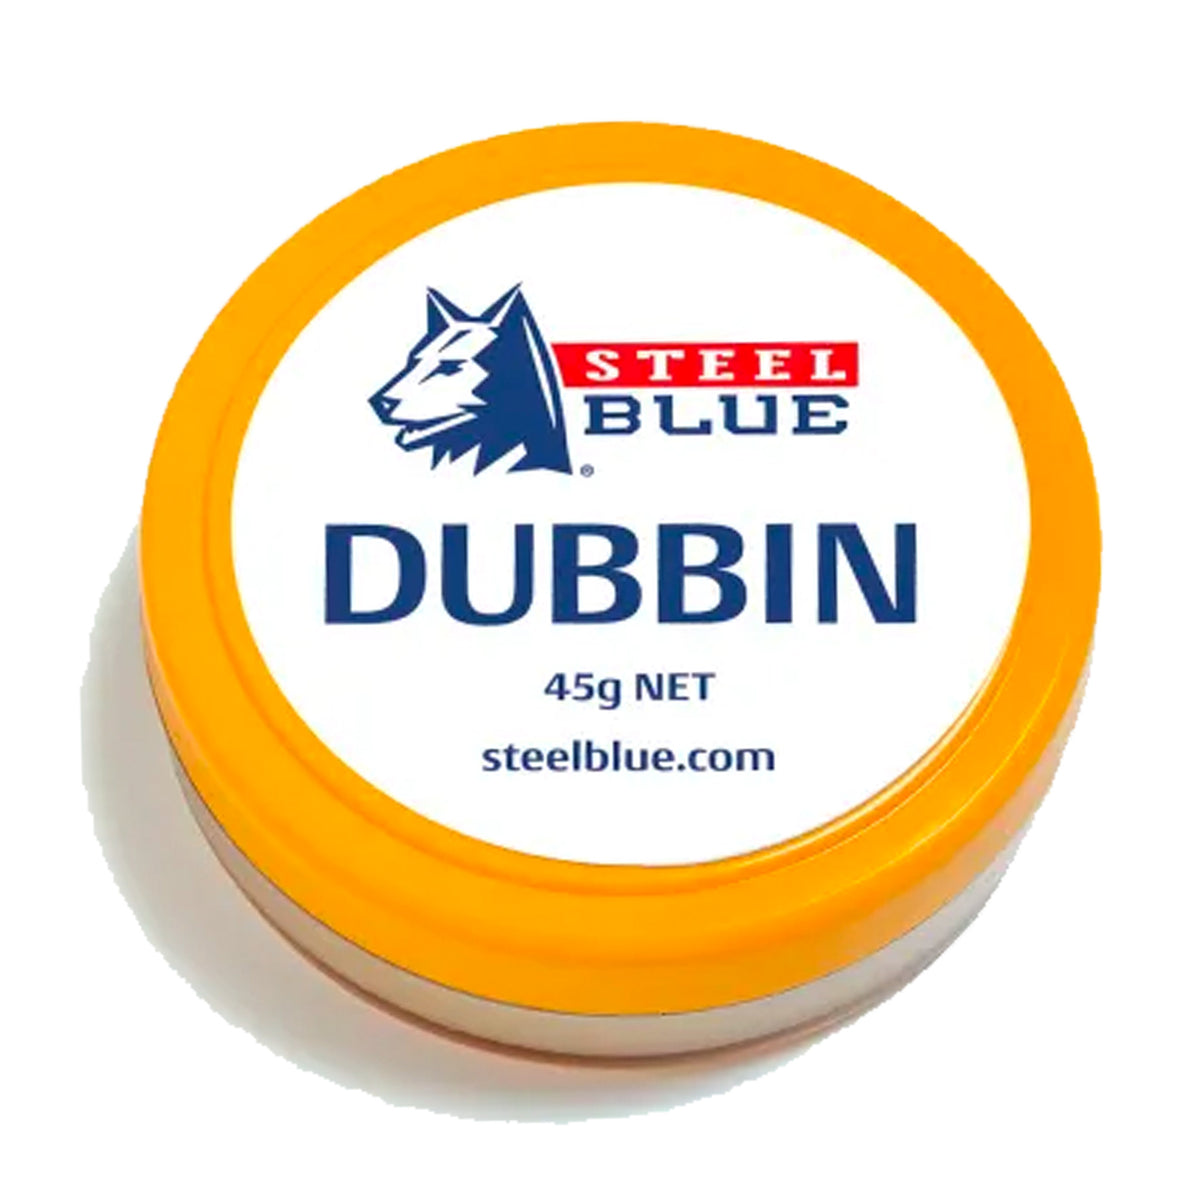 steel blue dubbin